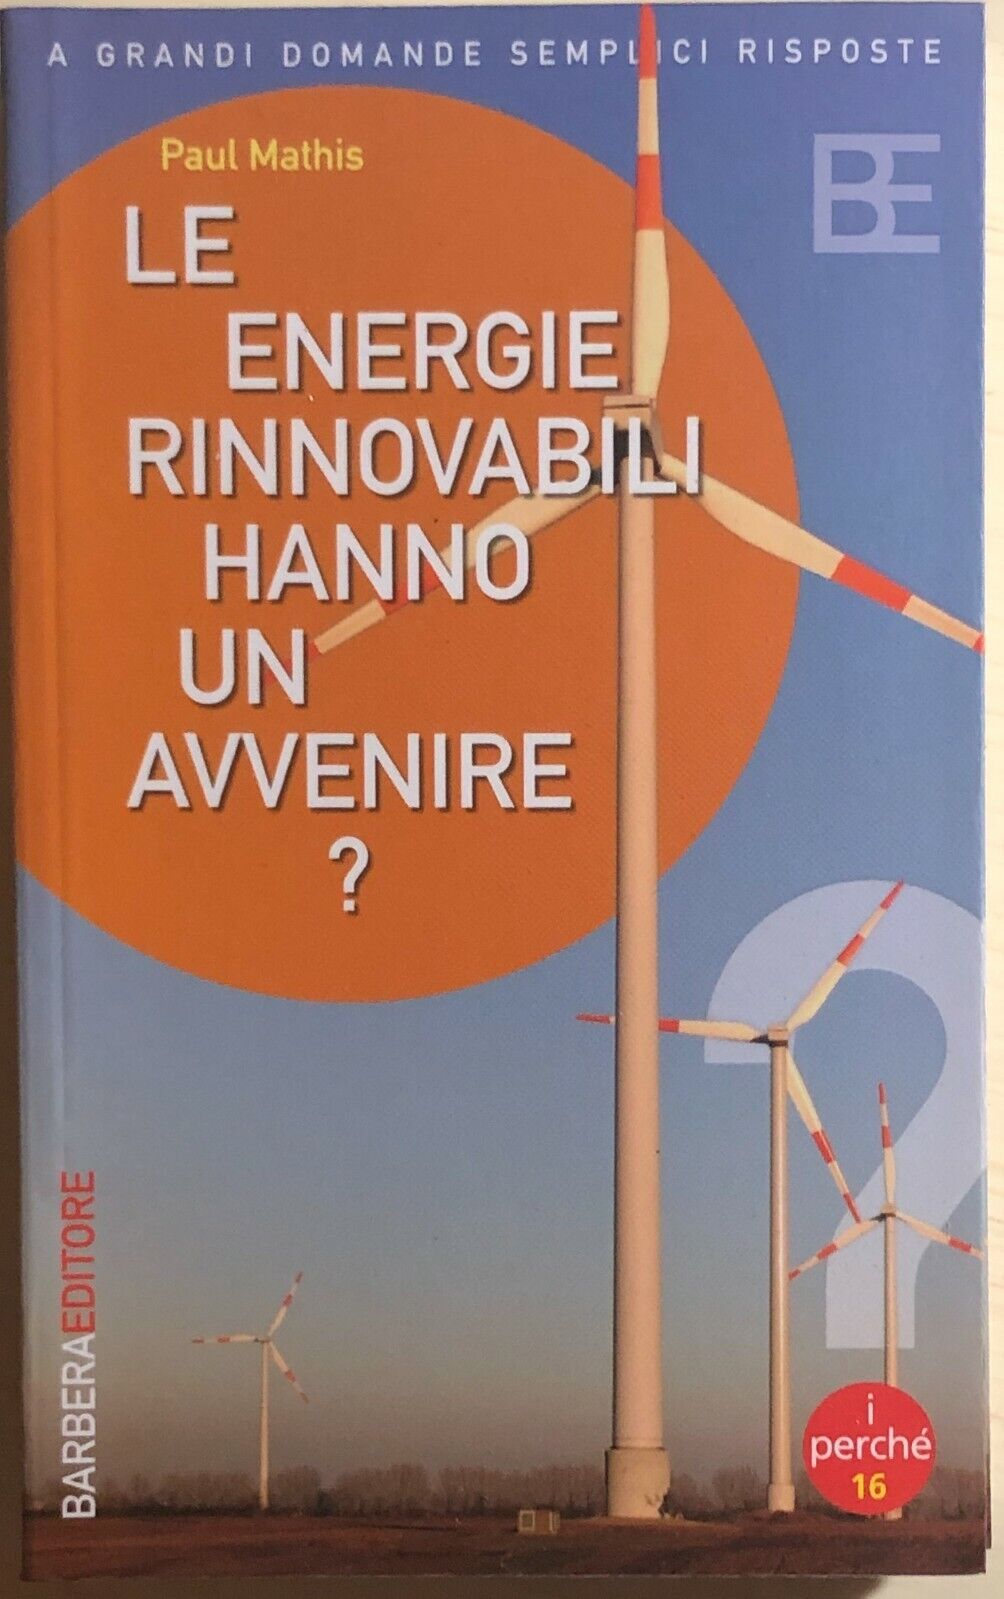 Le energie rinnovabili hanno un avvenire? di Paul Mathis, 2005, Barbera Editore